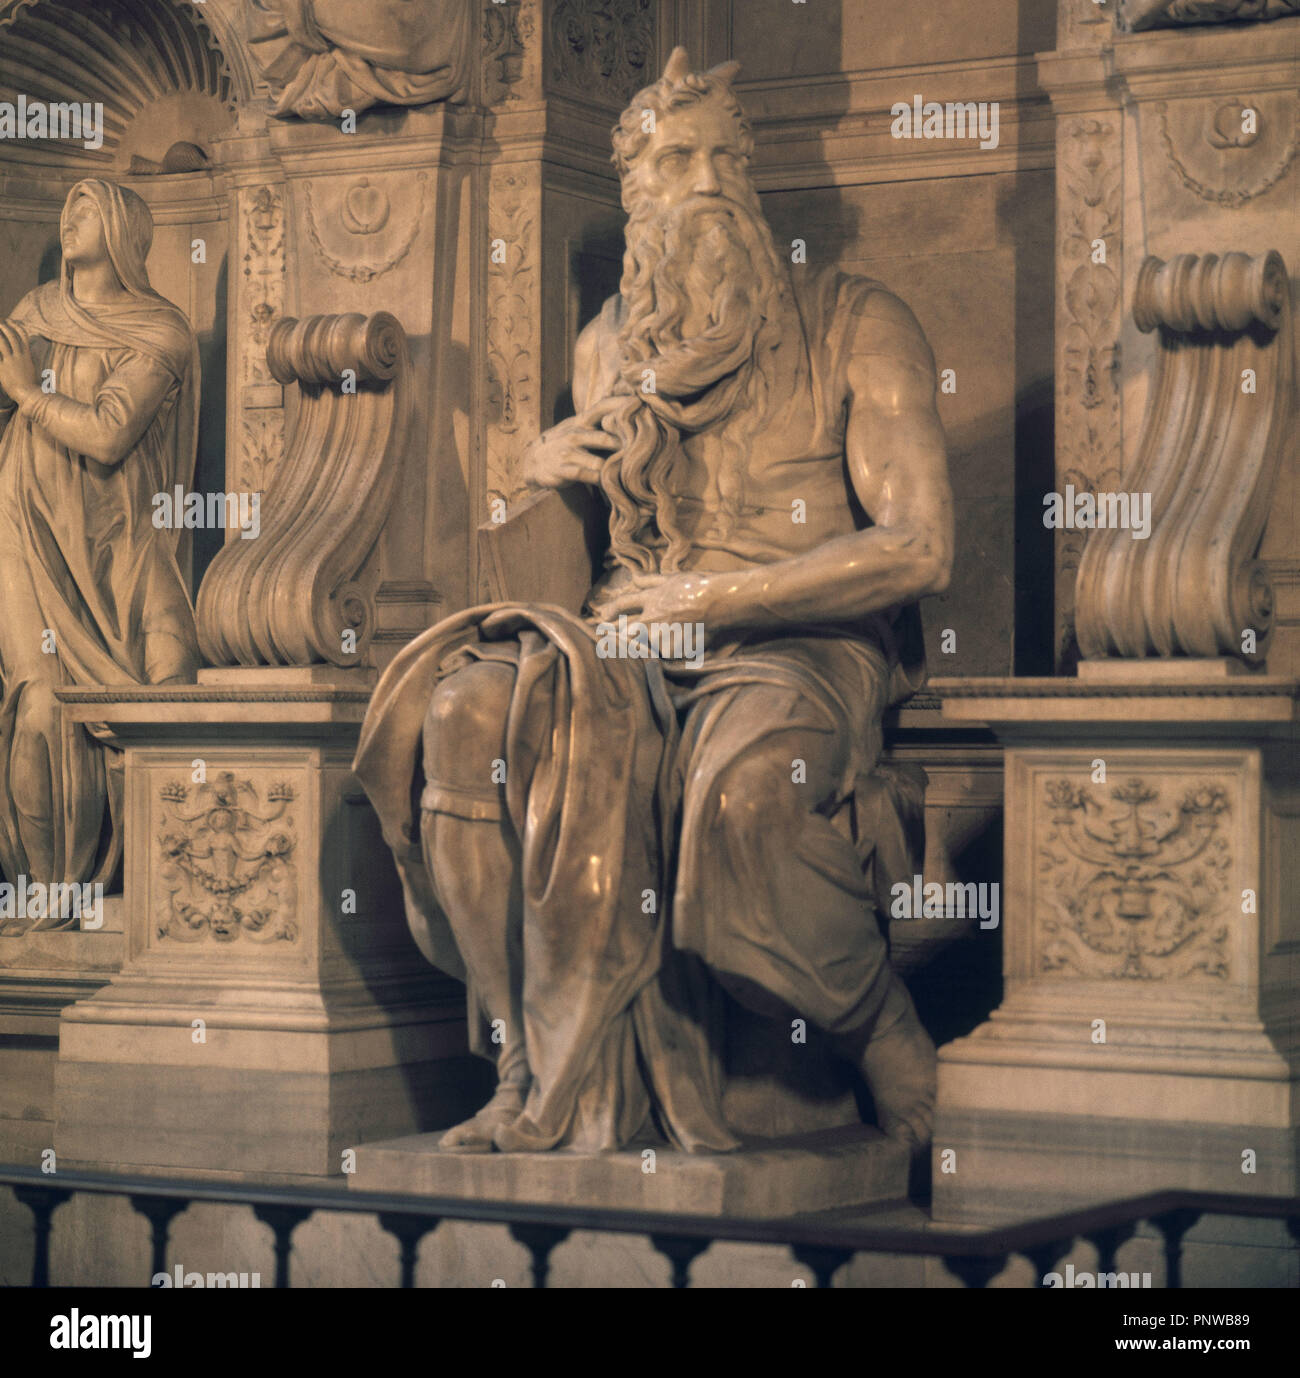 MOISES - ESCULTURA CENTRAL DE LA TUMBA DE JULIO II - 1513-1515 - RENACIMIENTO ITALIANO. Author: Michelangelo. Location: IGLESIA DE SAN PEDRO AD VINCULA. Rome. ITALIA. Stock Photo